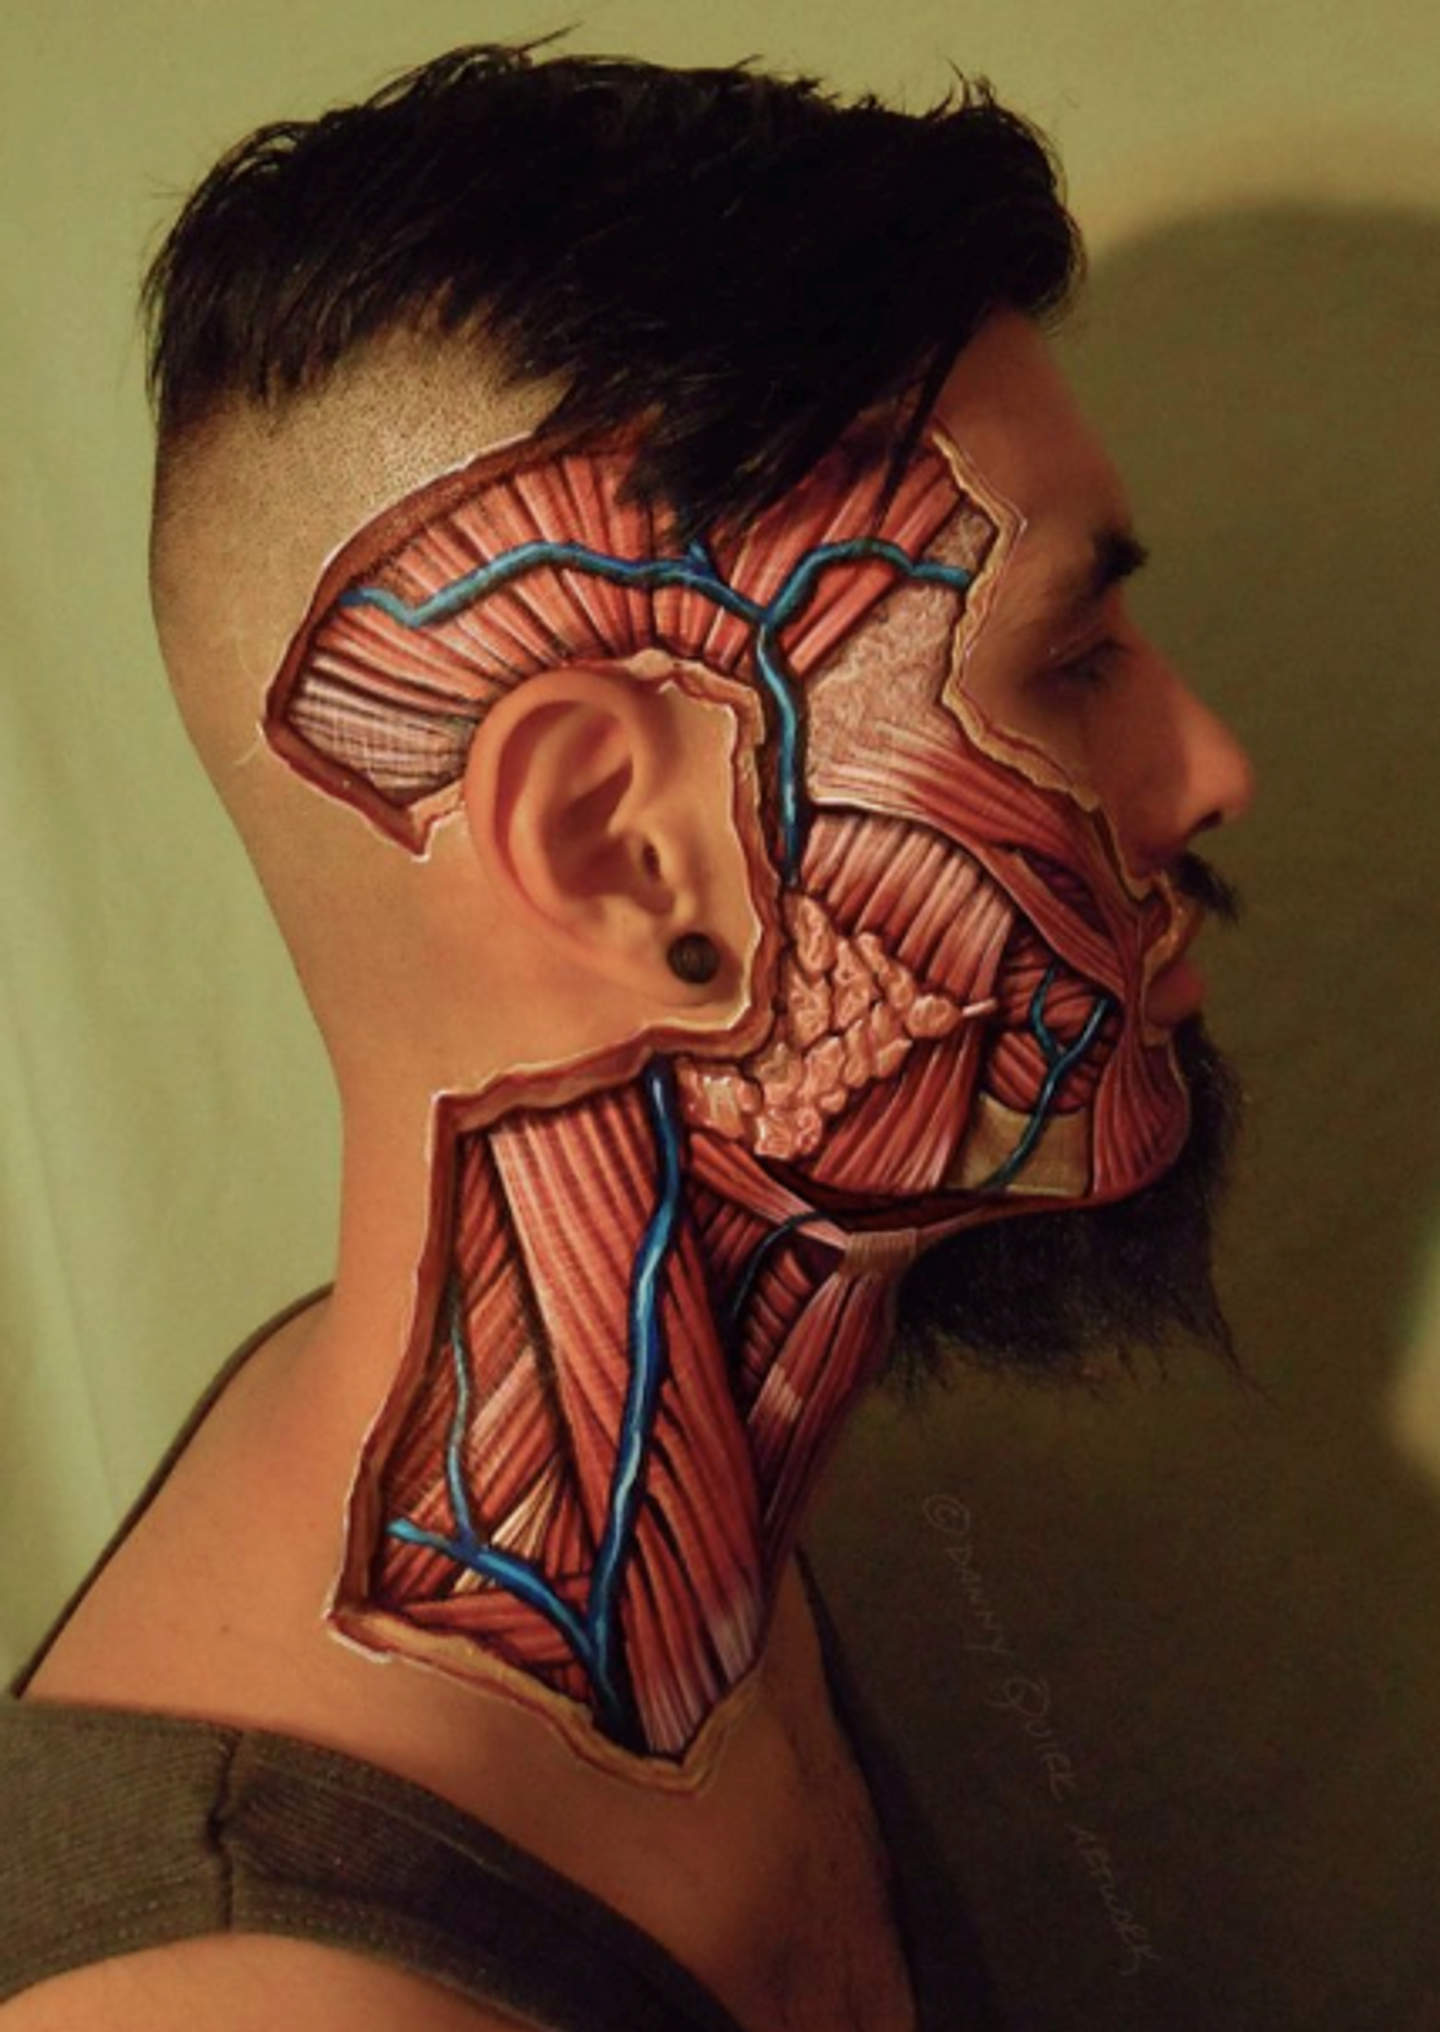 El artista que enseña anatomía sobre el cuerpo humano